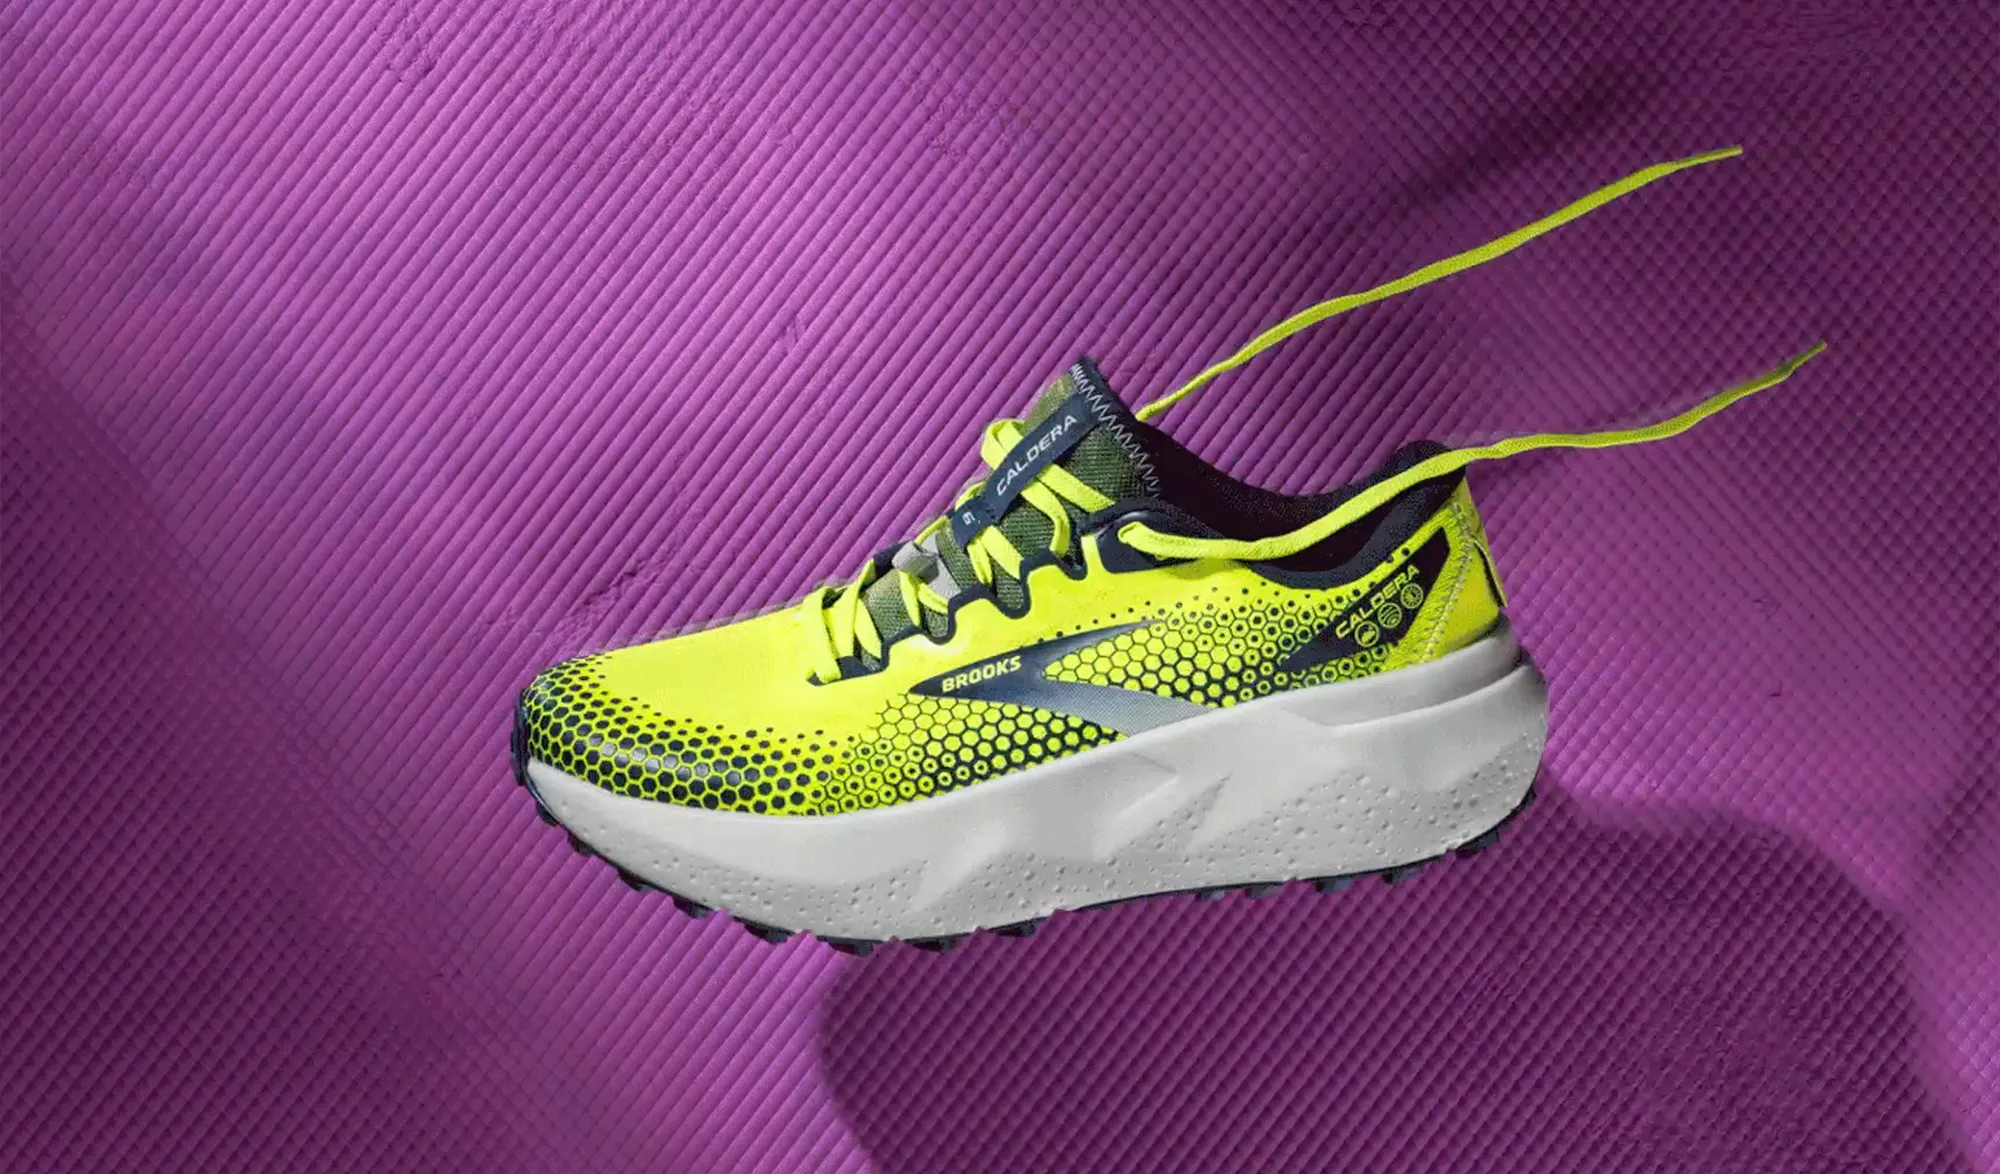 Les meilleures chaussures Nike du 10 km à l'ultra